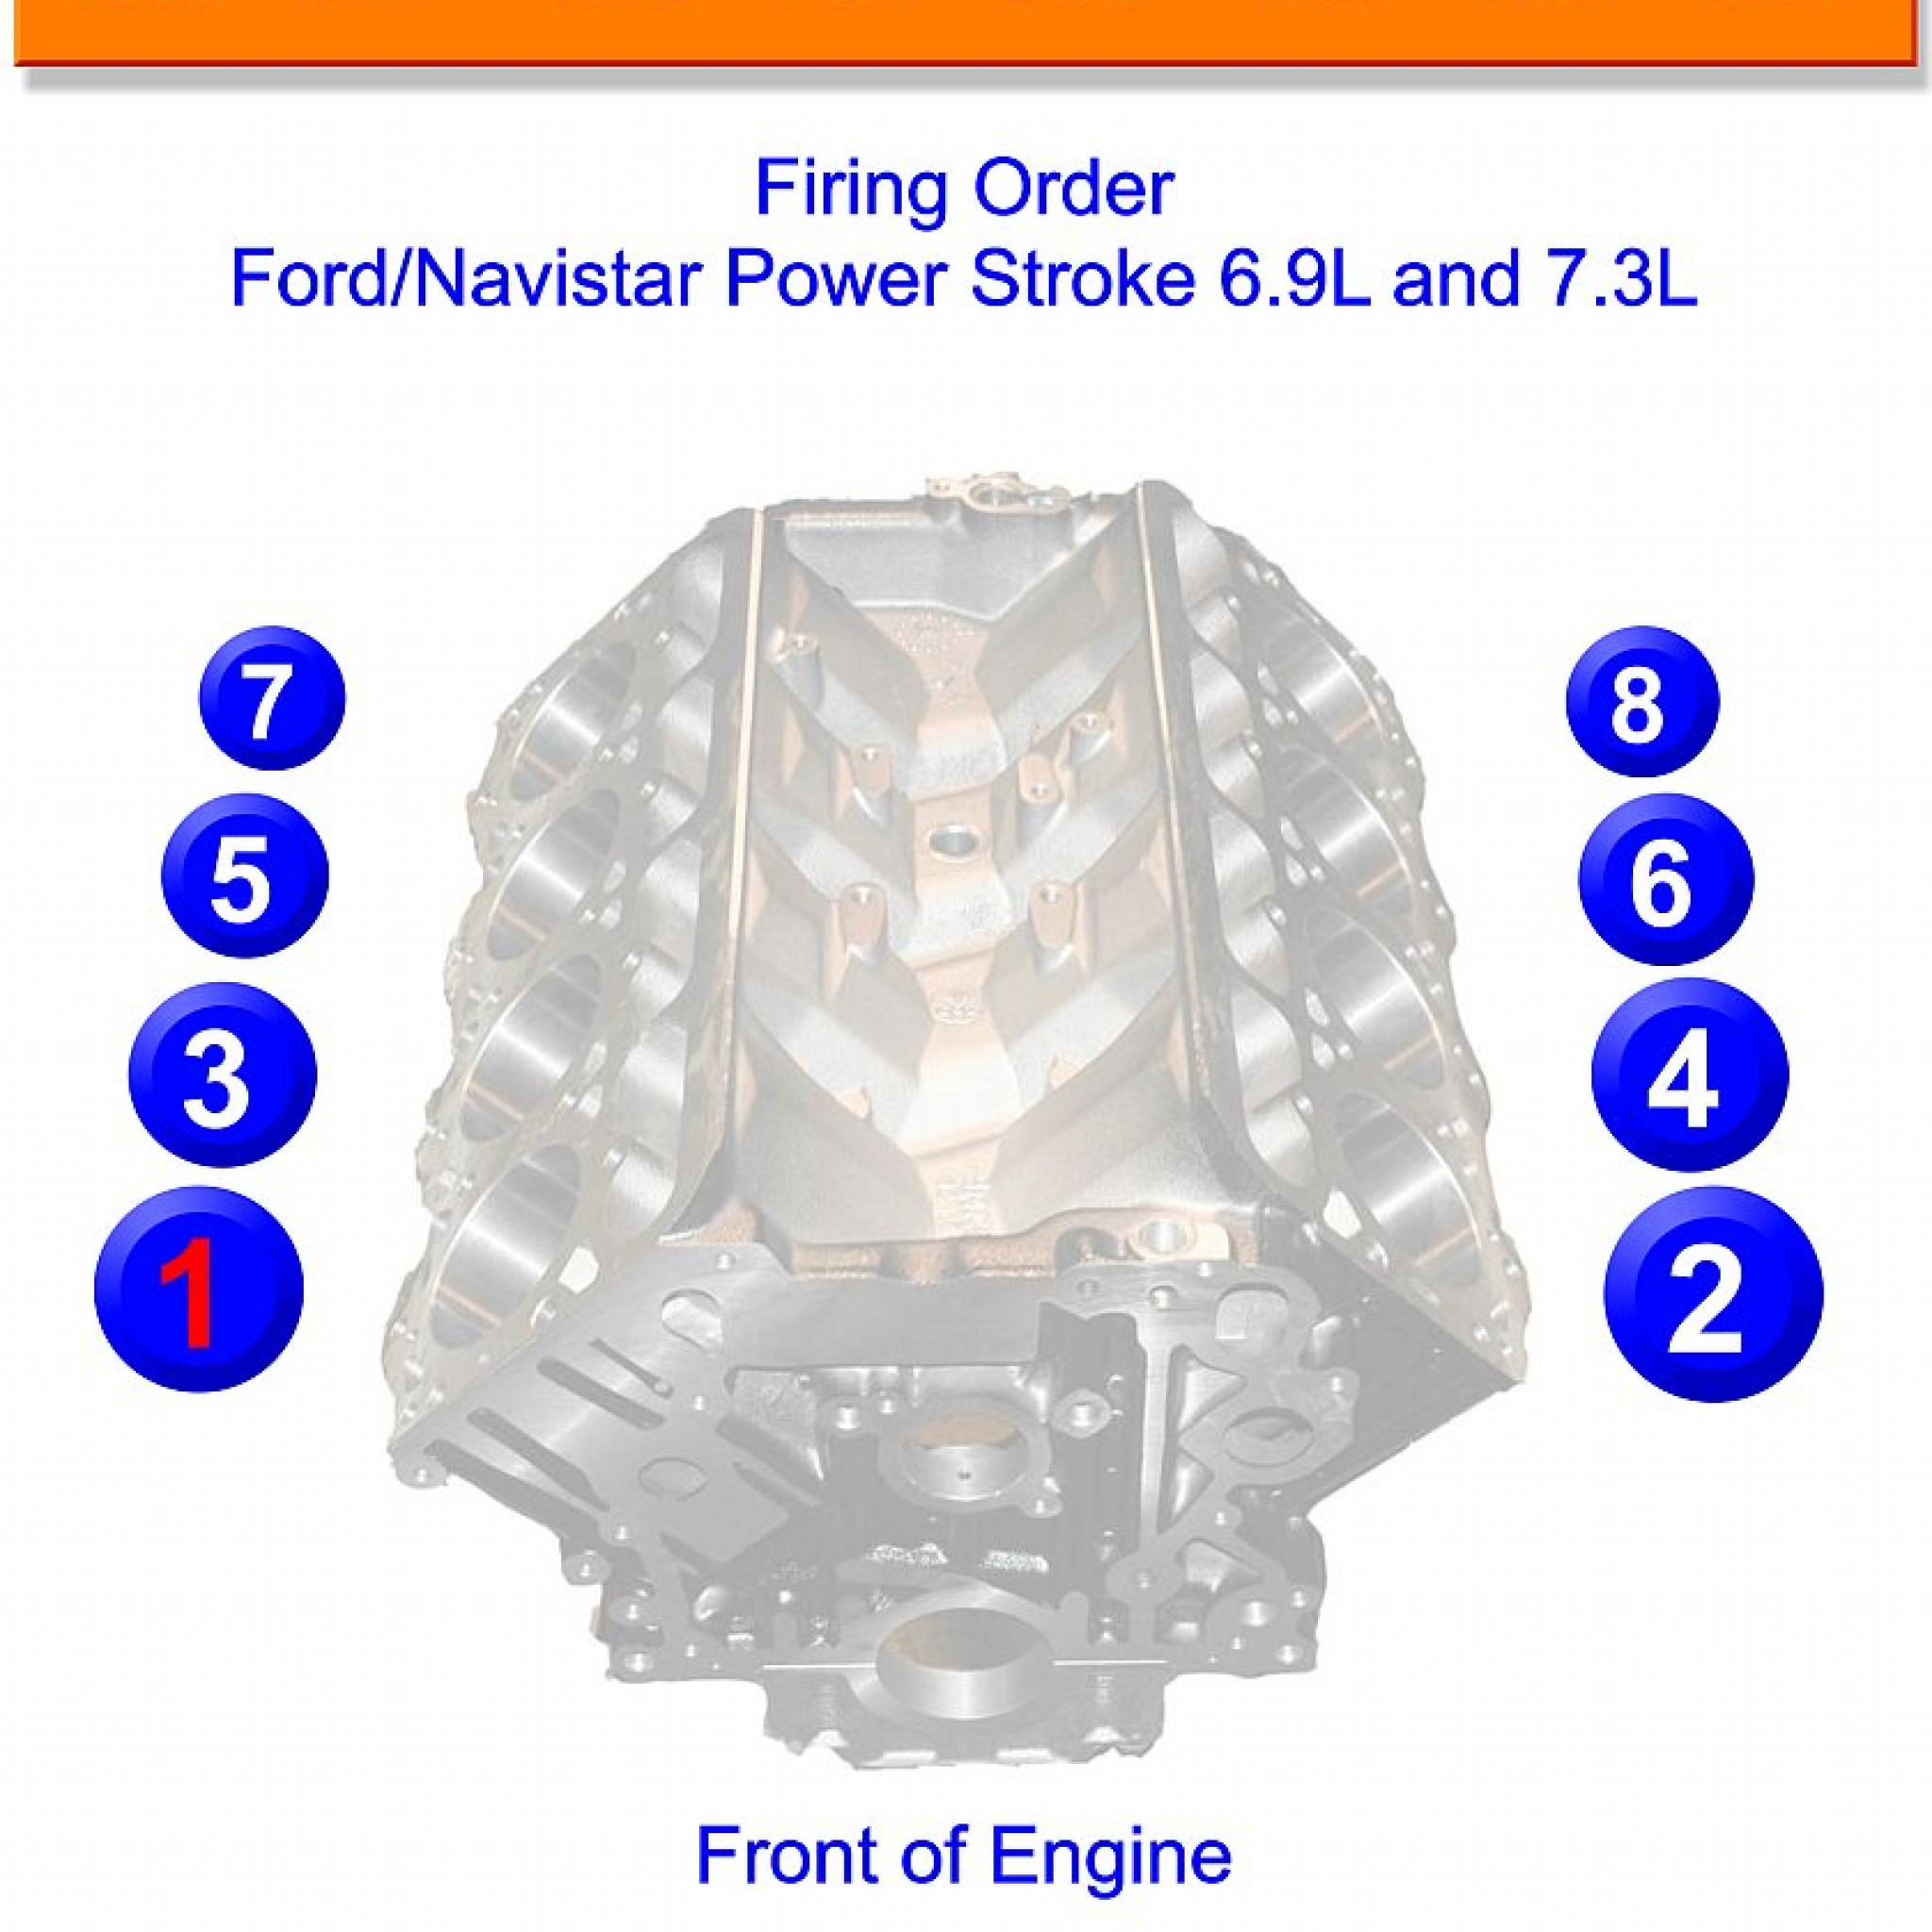 Ford 7.3 Firing Order